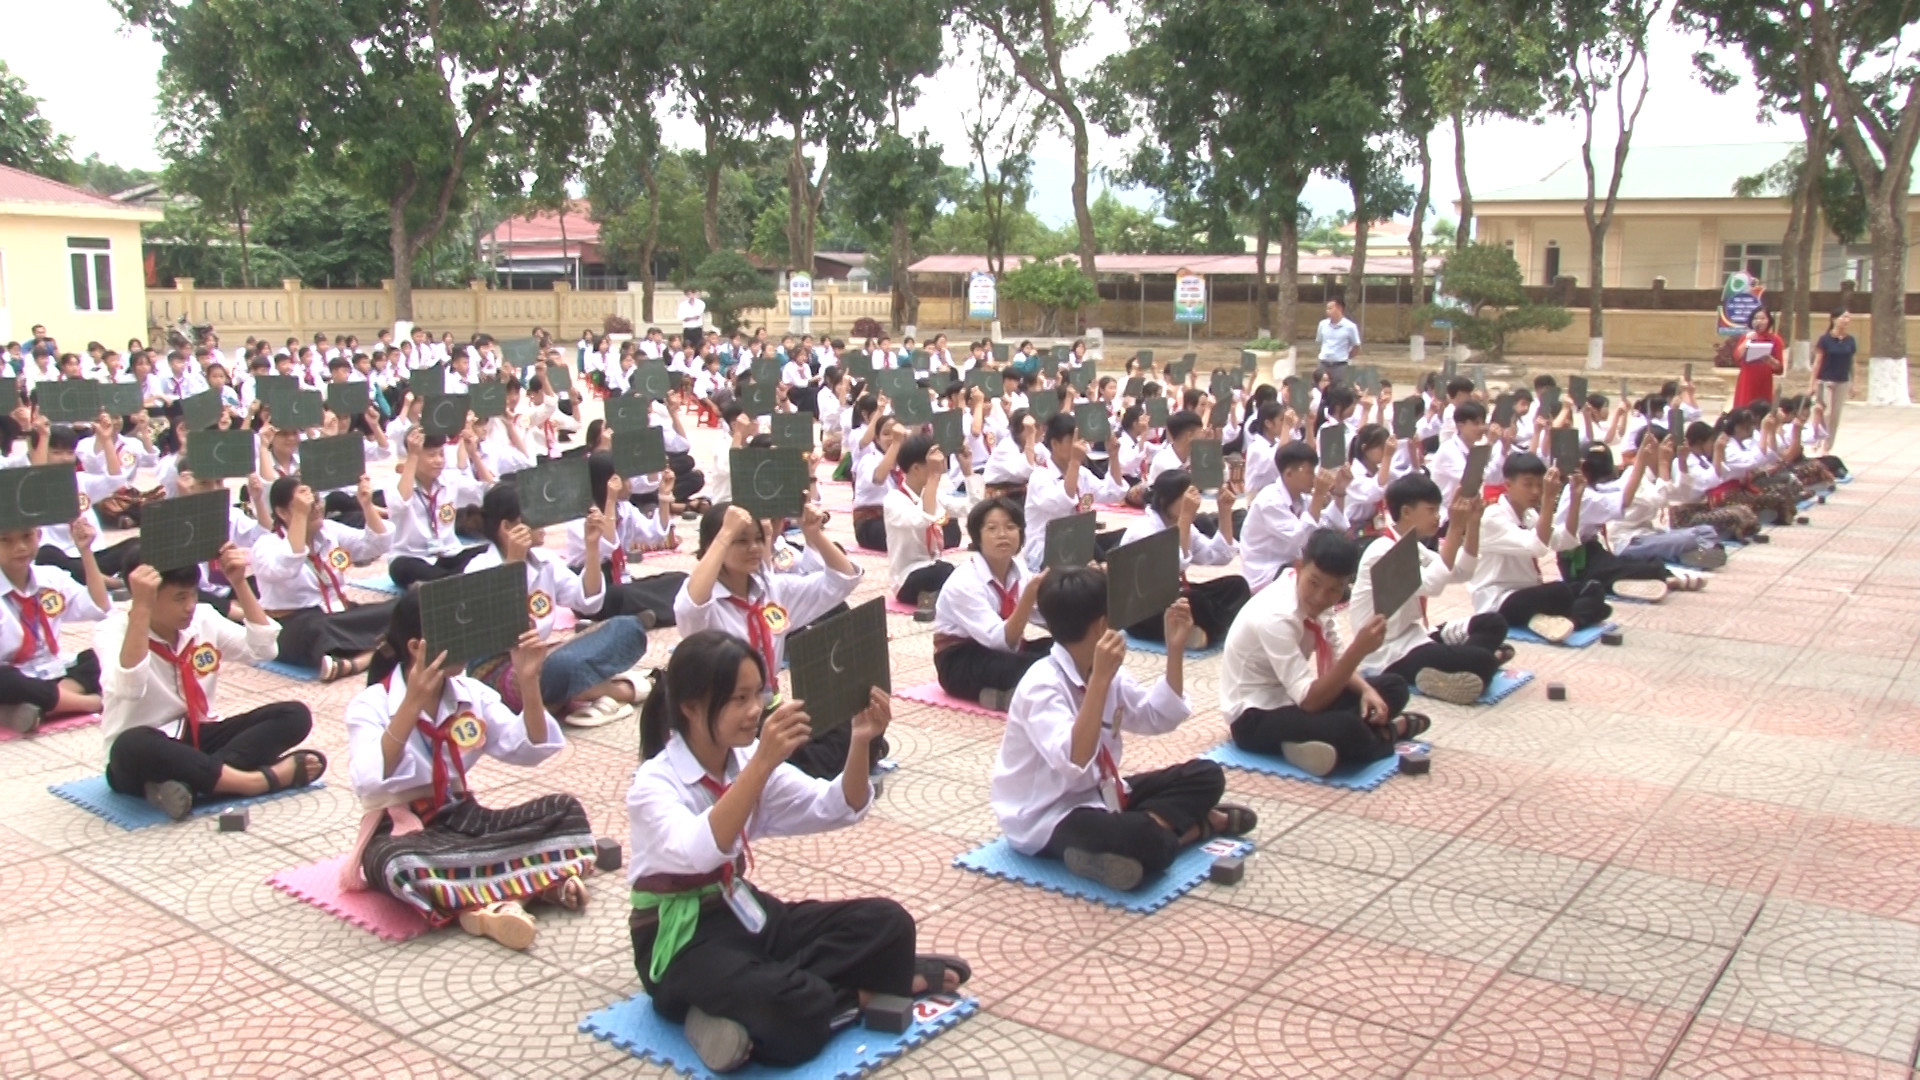 Hội thu rung chuông vàng với chủ đề tuyên truyền giảm thiểu TH&HNCHT được tổ chức cho các em lứa tuổi học sinh ở huyện Như Thanh (Thanh Hóa).